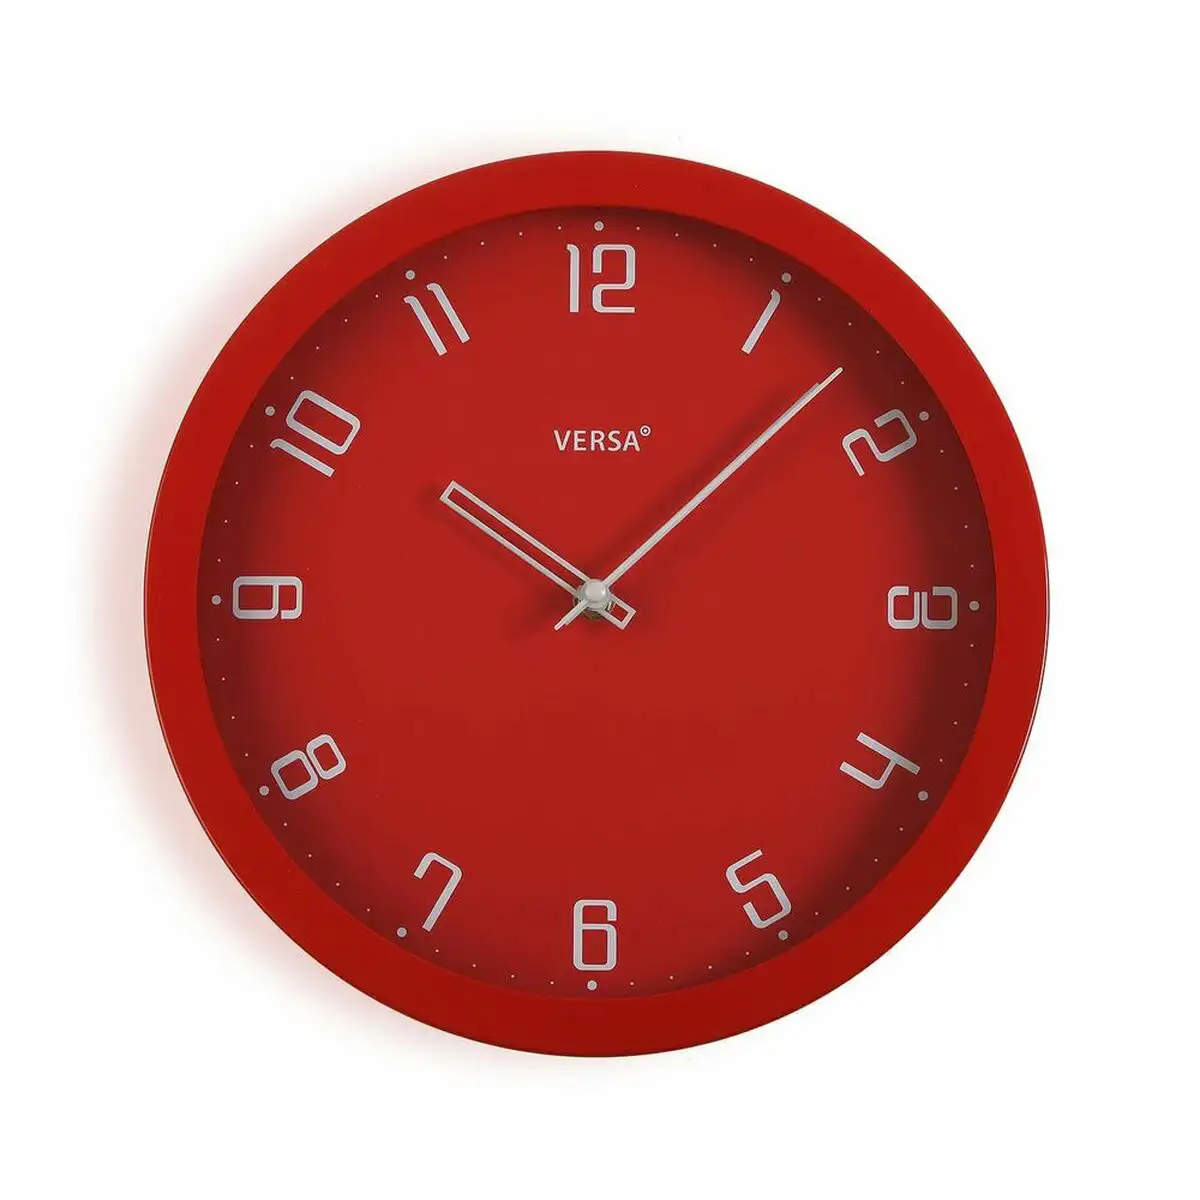 Horloge murale versa rouge polypropylene 4 3 x 30 x 30 cm _8828. DIAYTAR SENEGAL - Votre Source de Découvertes Shopping. Découvrez des trésors dans notre boutique en ligne, allant des articles artisanaux aux innovations modernes.